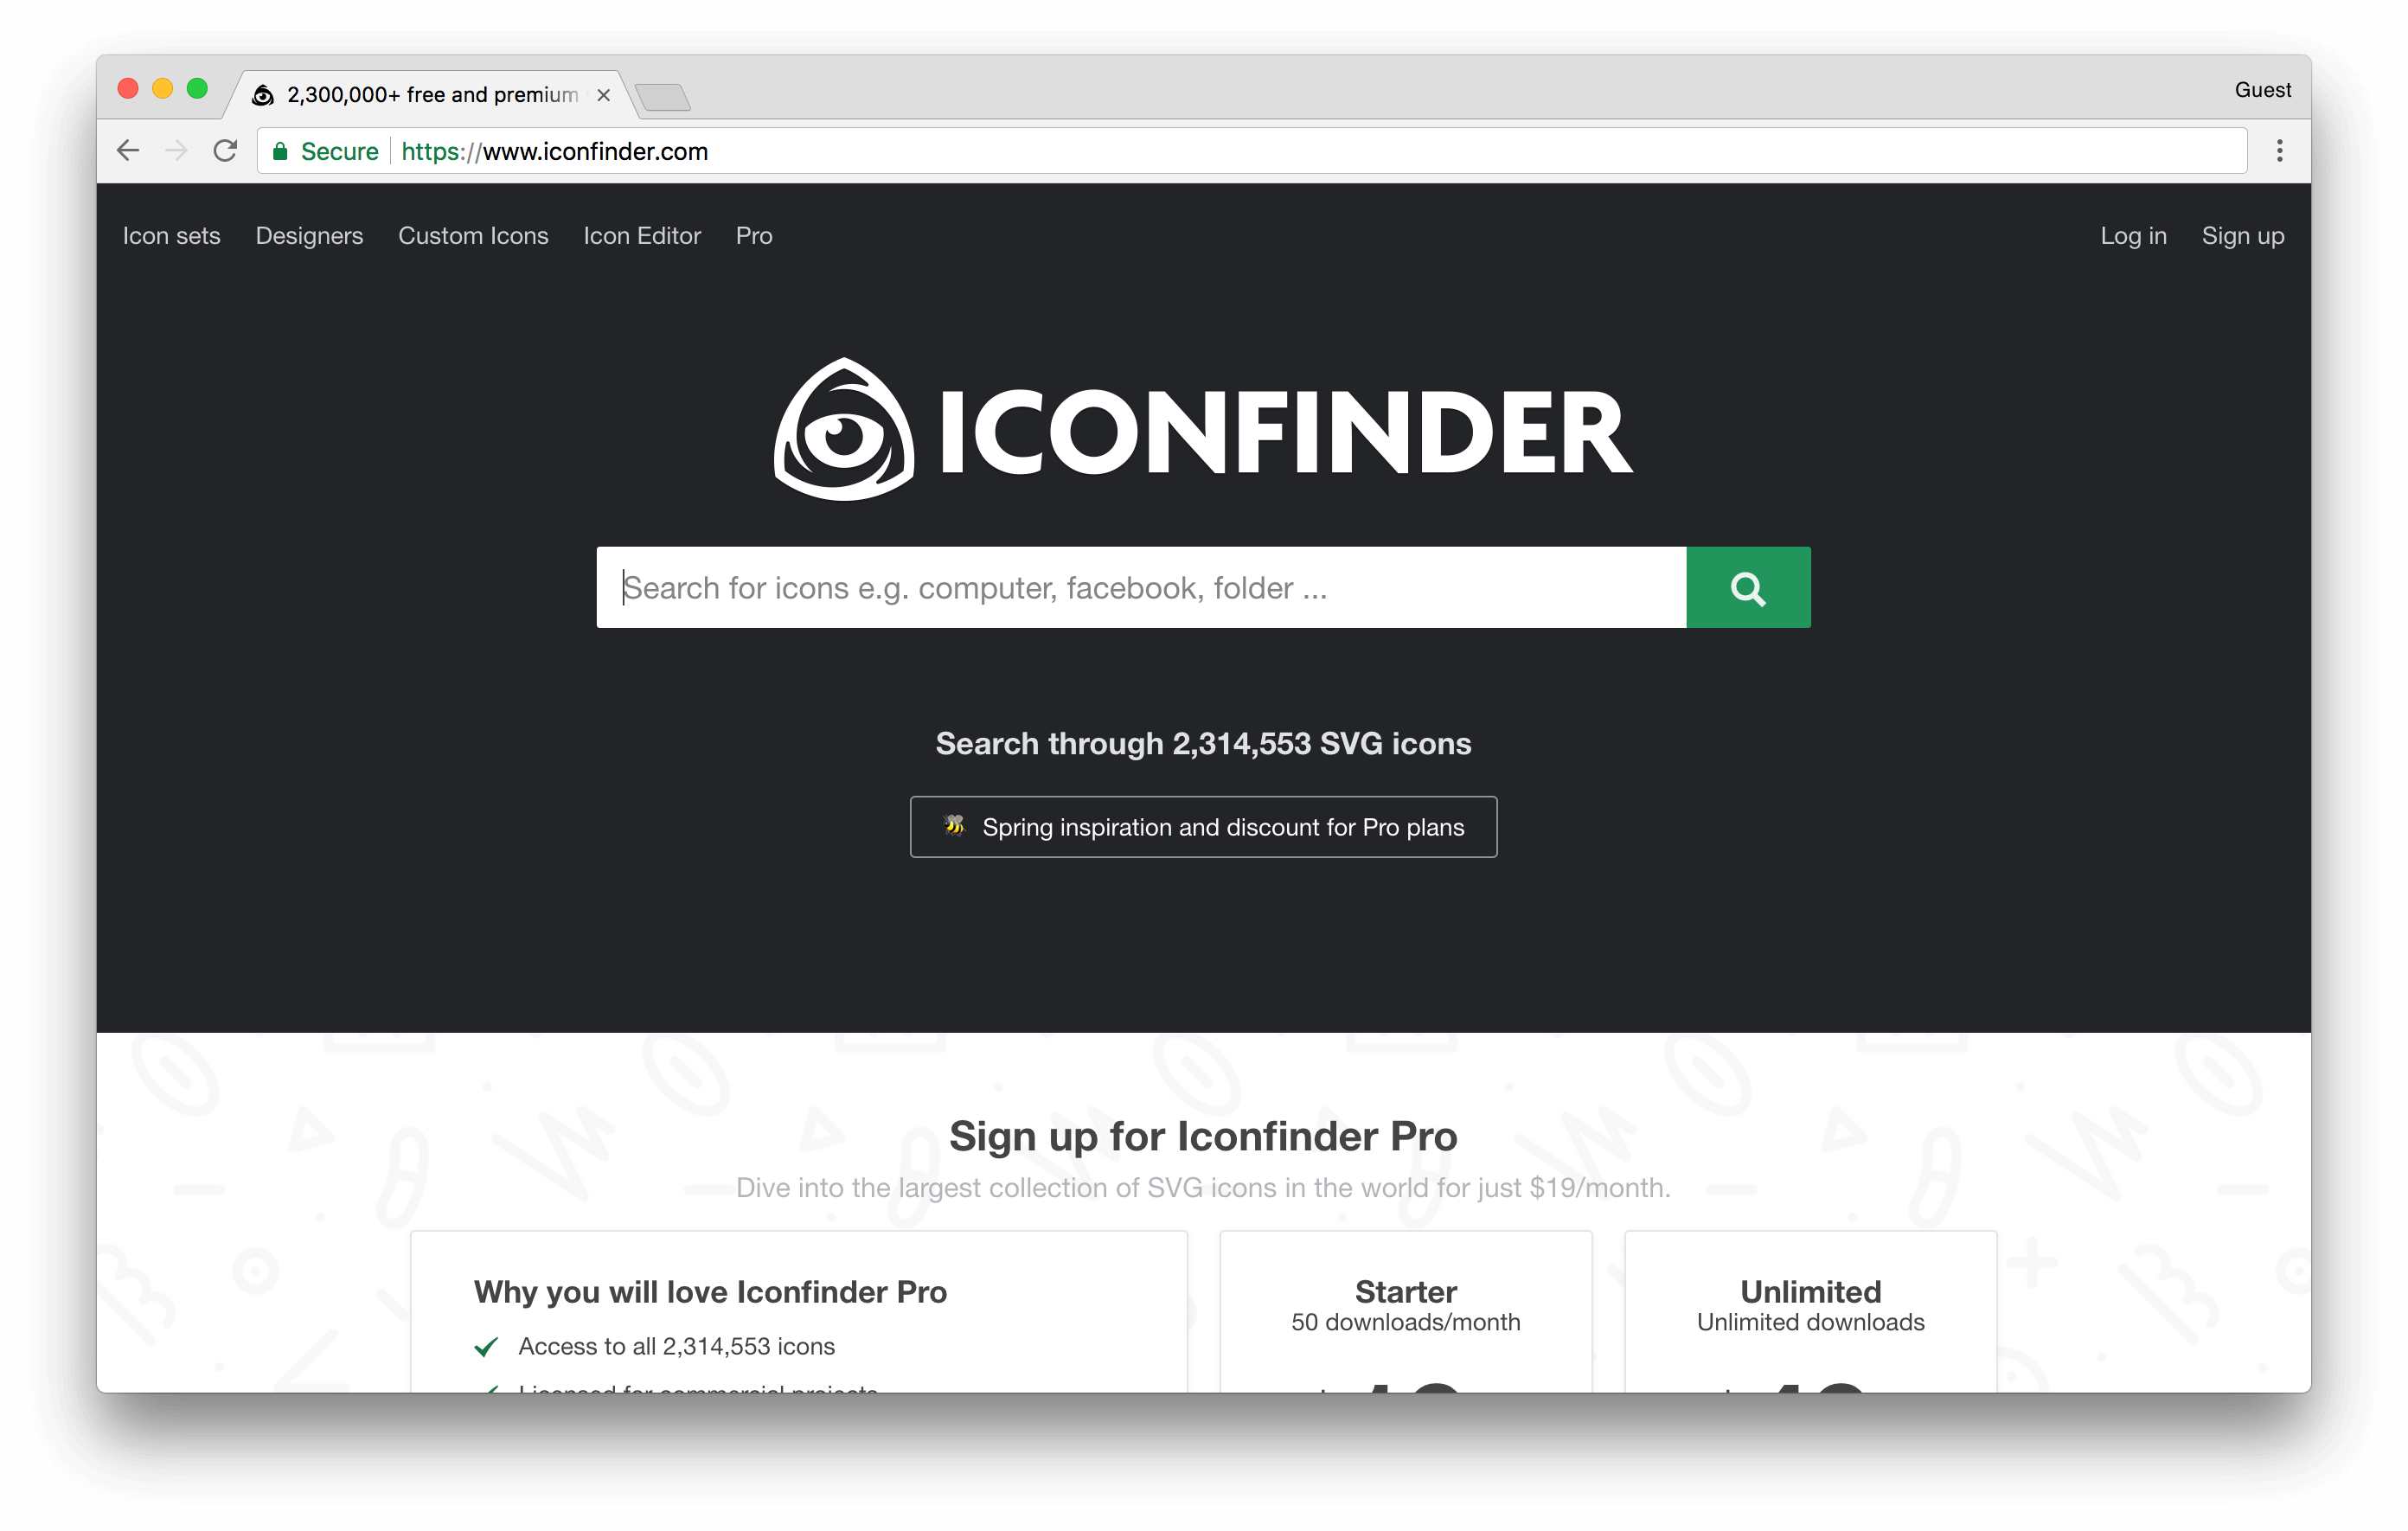 iconfinder.com